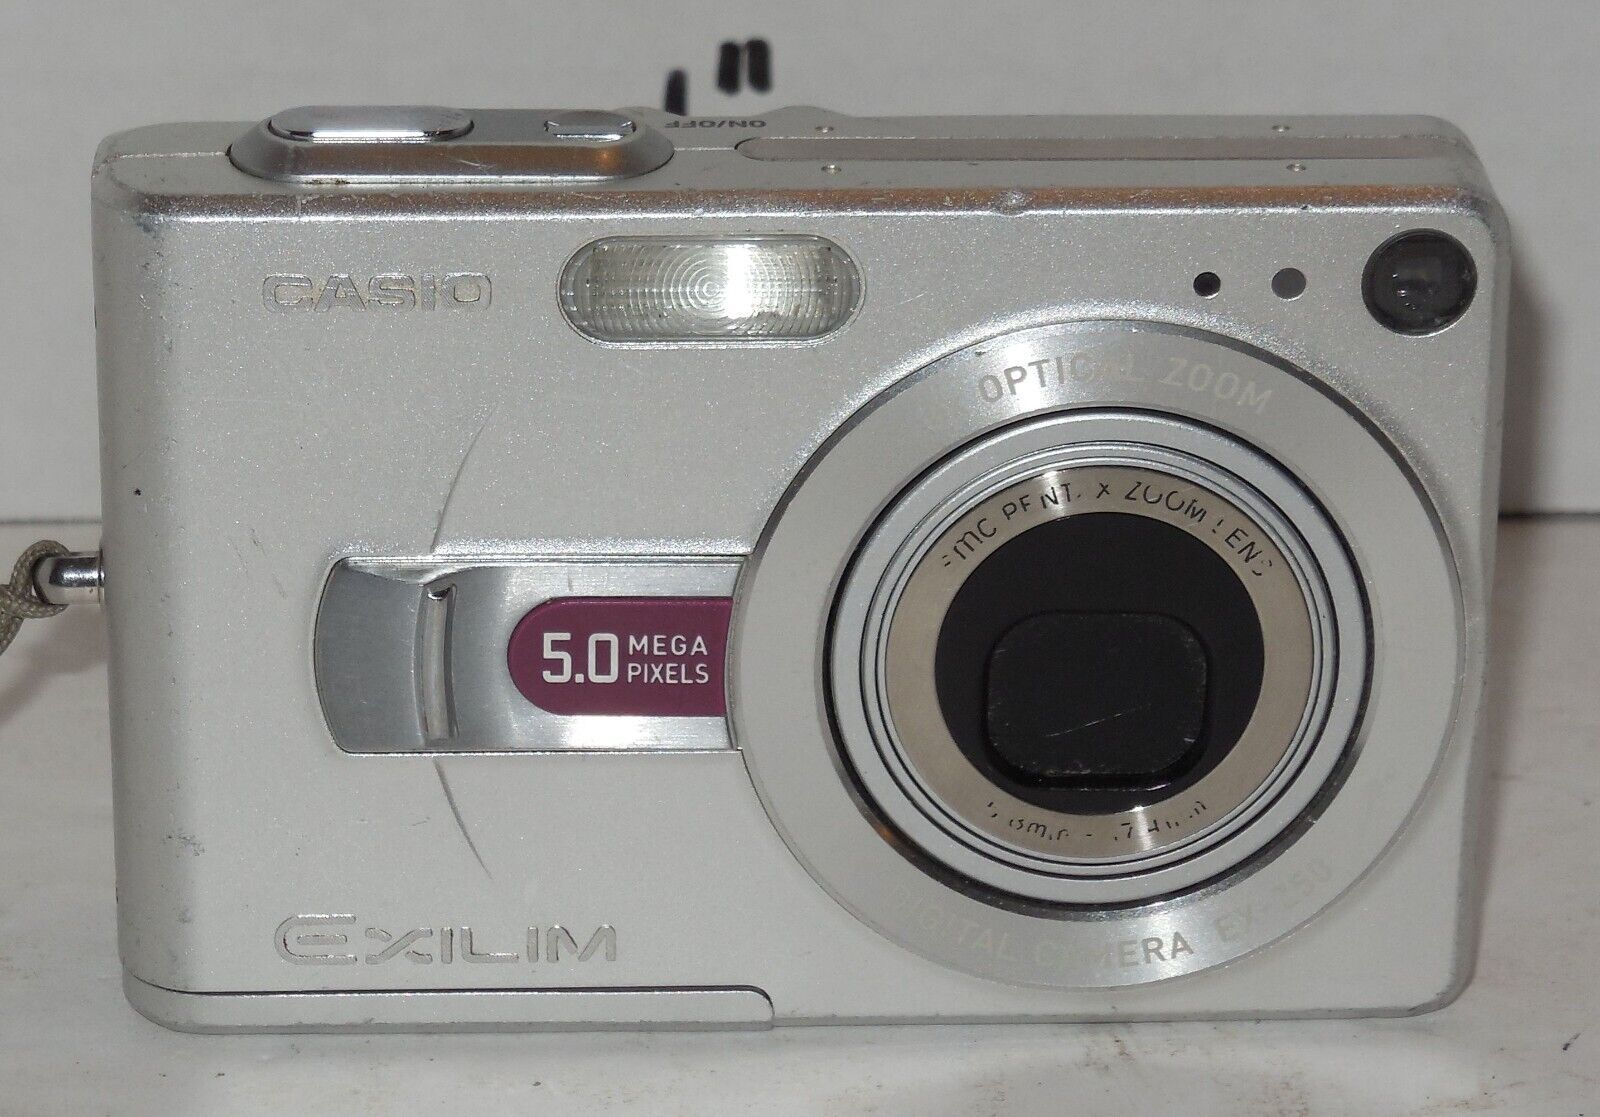 Casio EXILIM EX-Z50 5.0MP Digital Camera - Silver Tested Works - $49.50